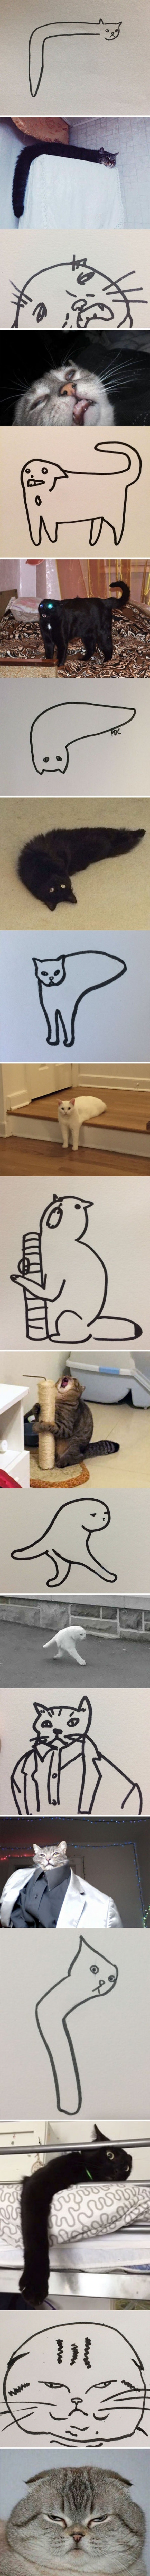 Meme_otros - Dibujos de gatos llevados a la vida real